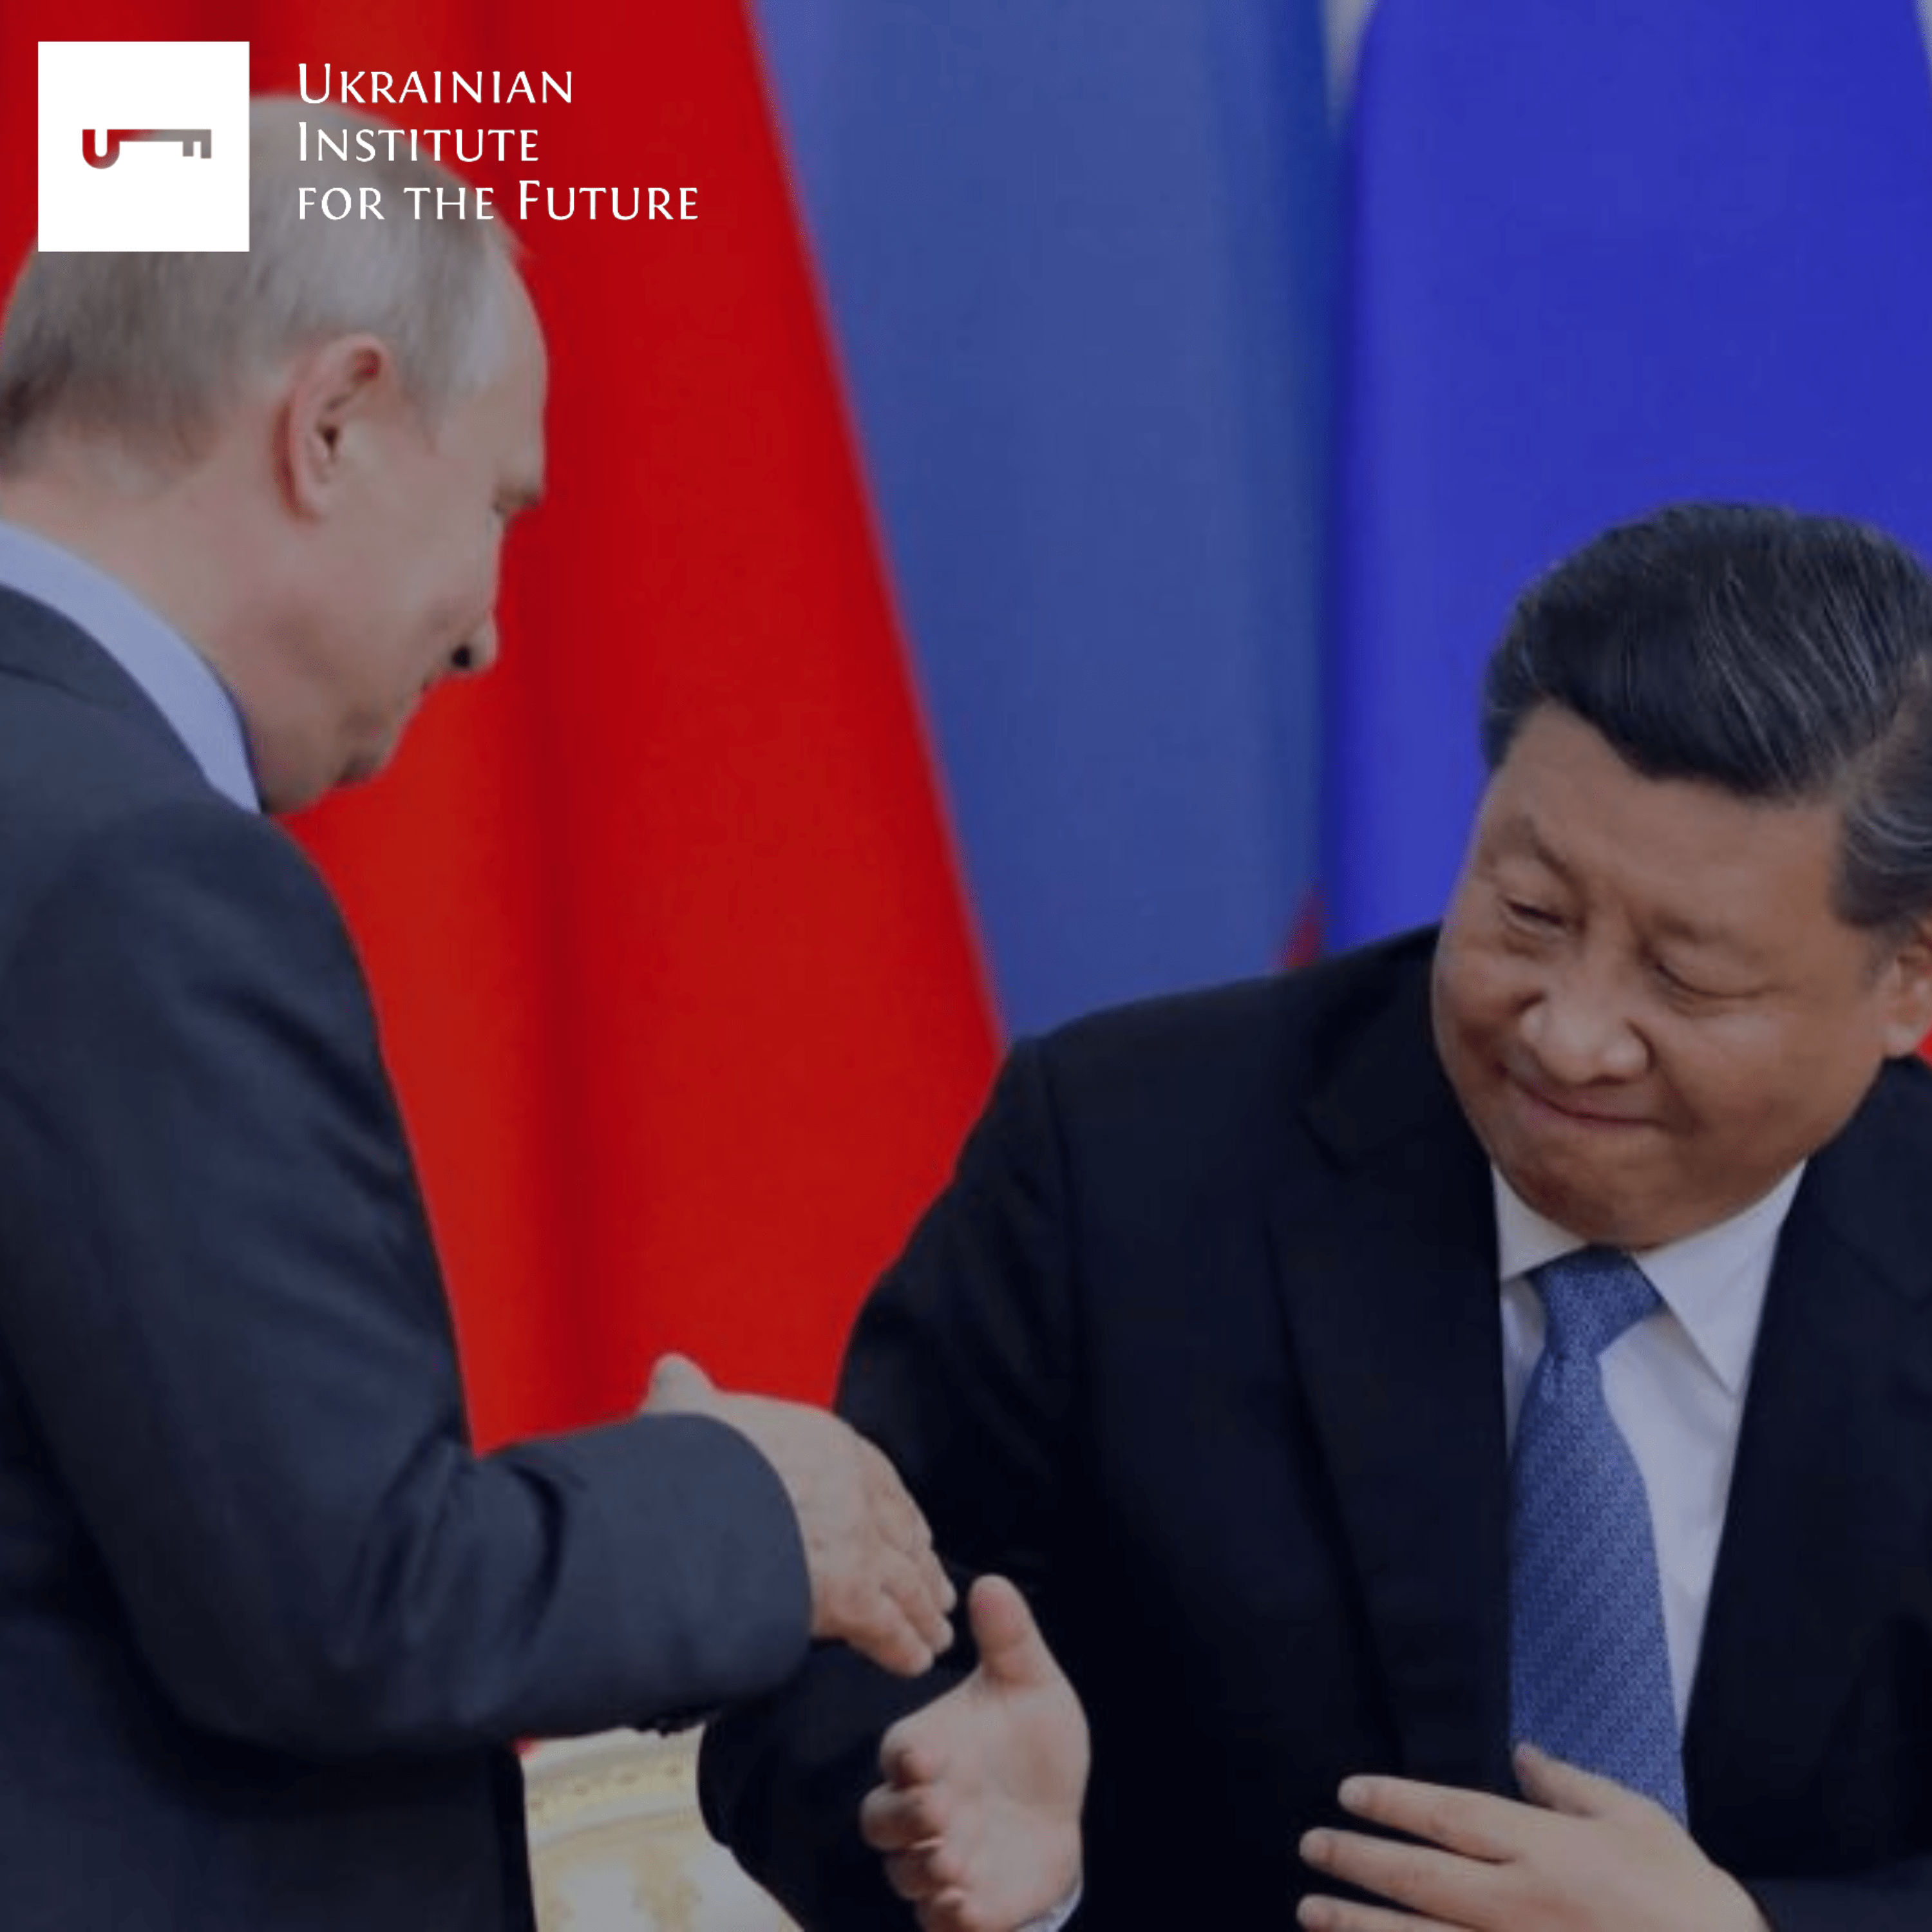 Як російська пропаганда подає дружбу з КНР: краще бути васалом Китаю, ніж США і «не все так однозначно, є секретні домовленості»